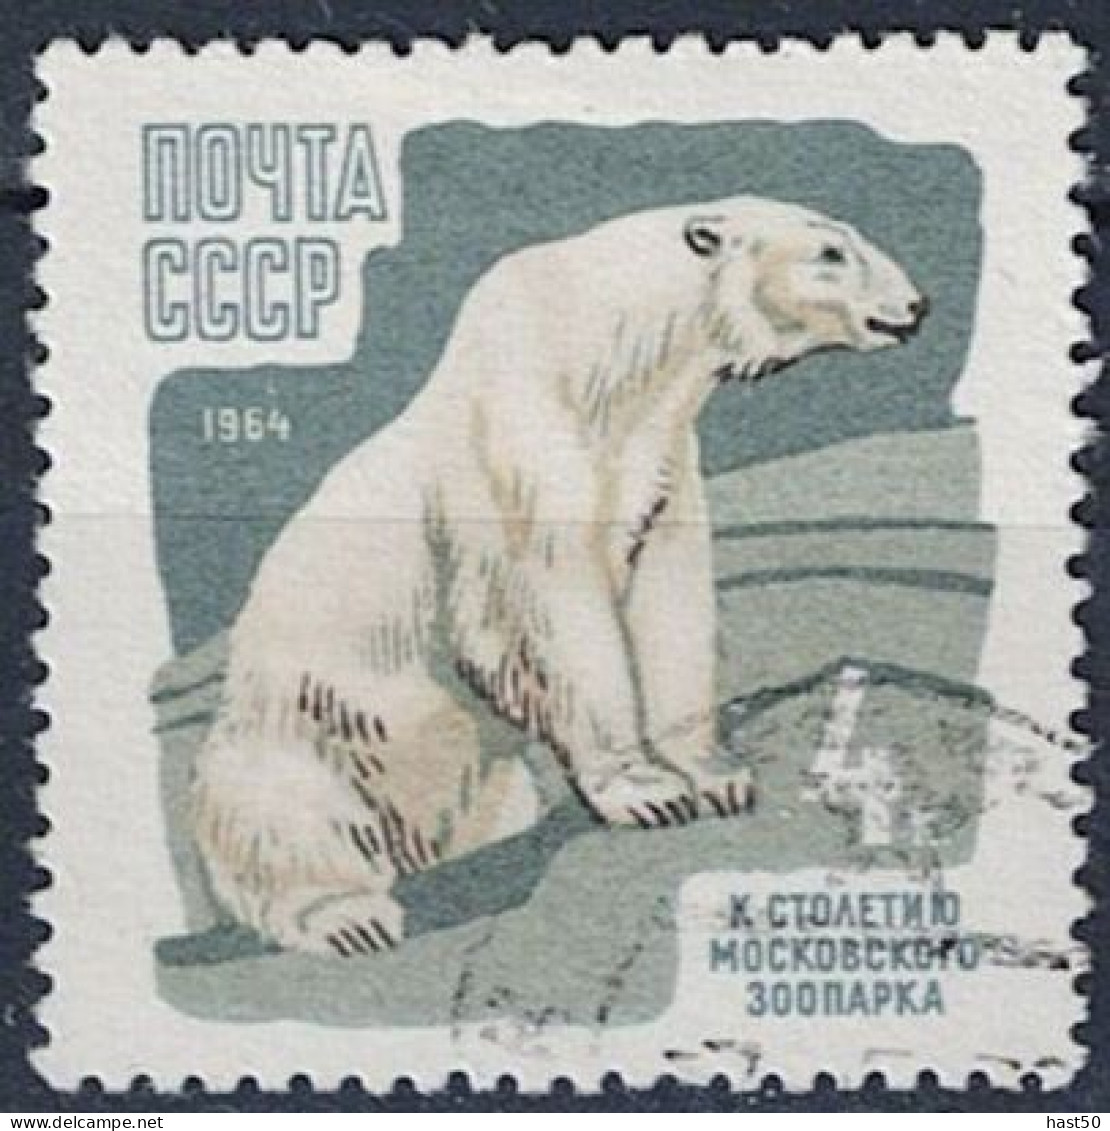 Sowjetunion UdSSR - Eisbär (Ursus Maritimus) (MiNr. 2916) 1964 - Gest Used Obl - Usati